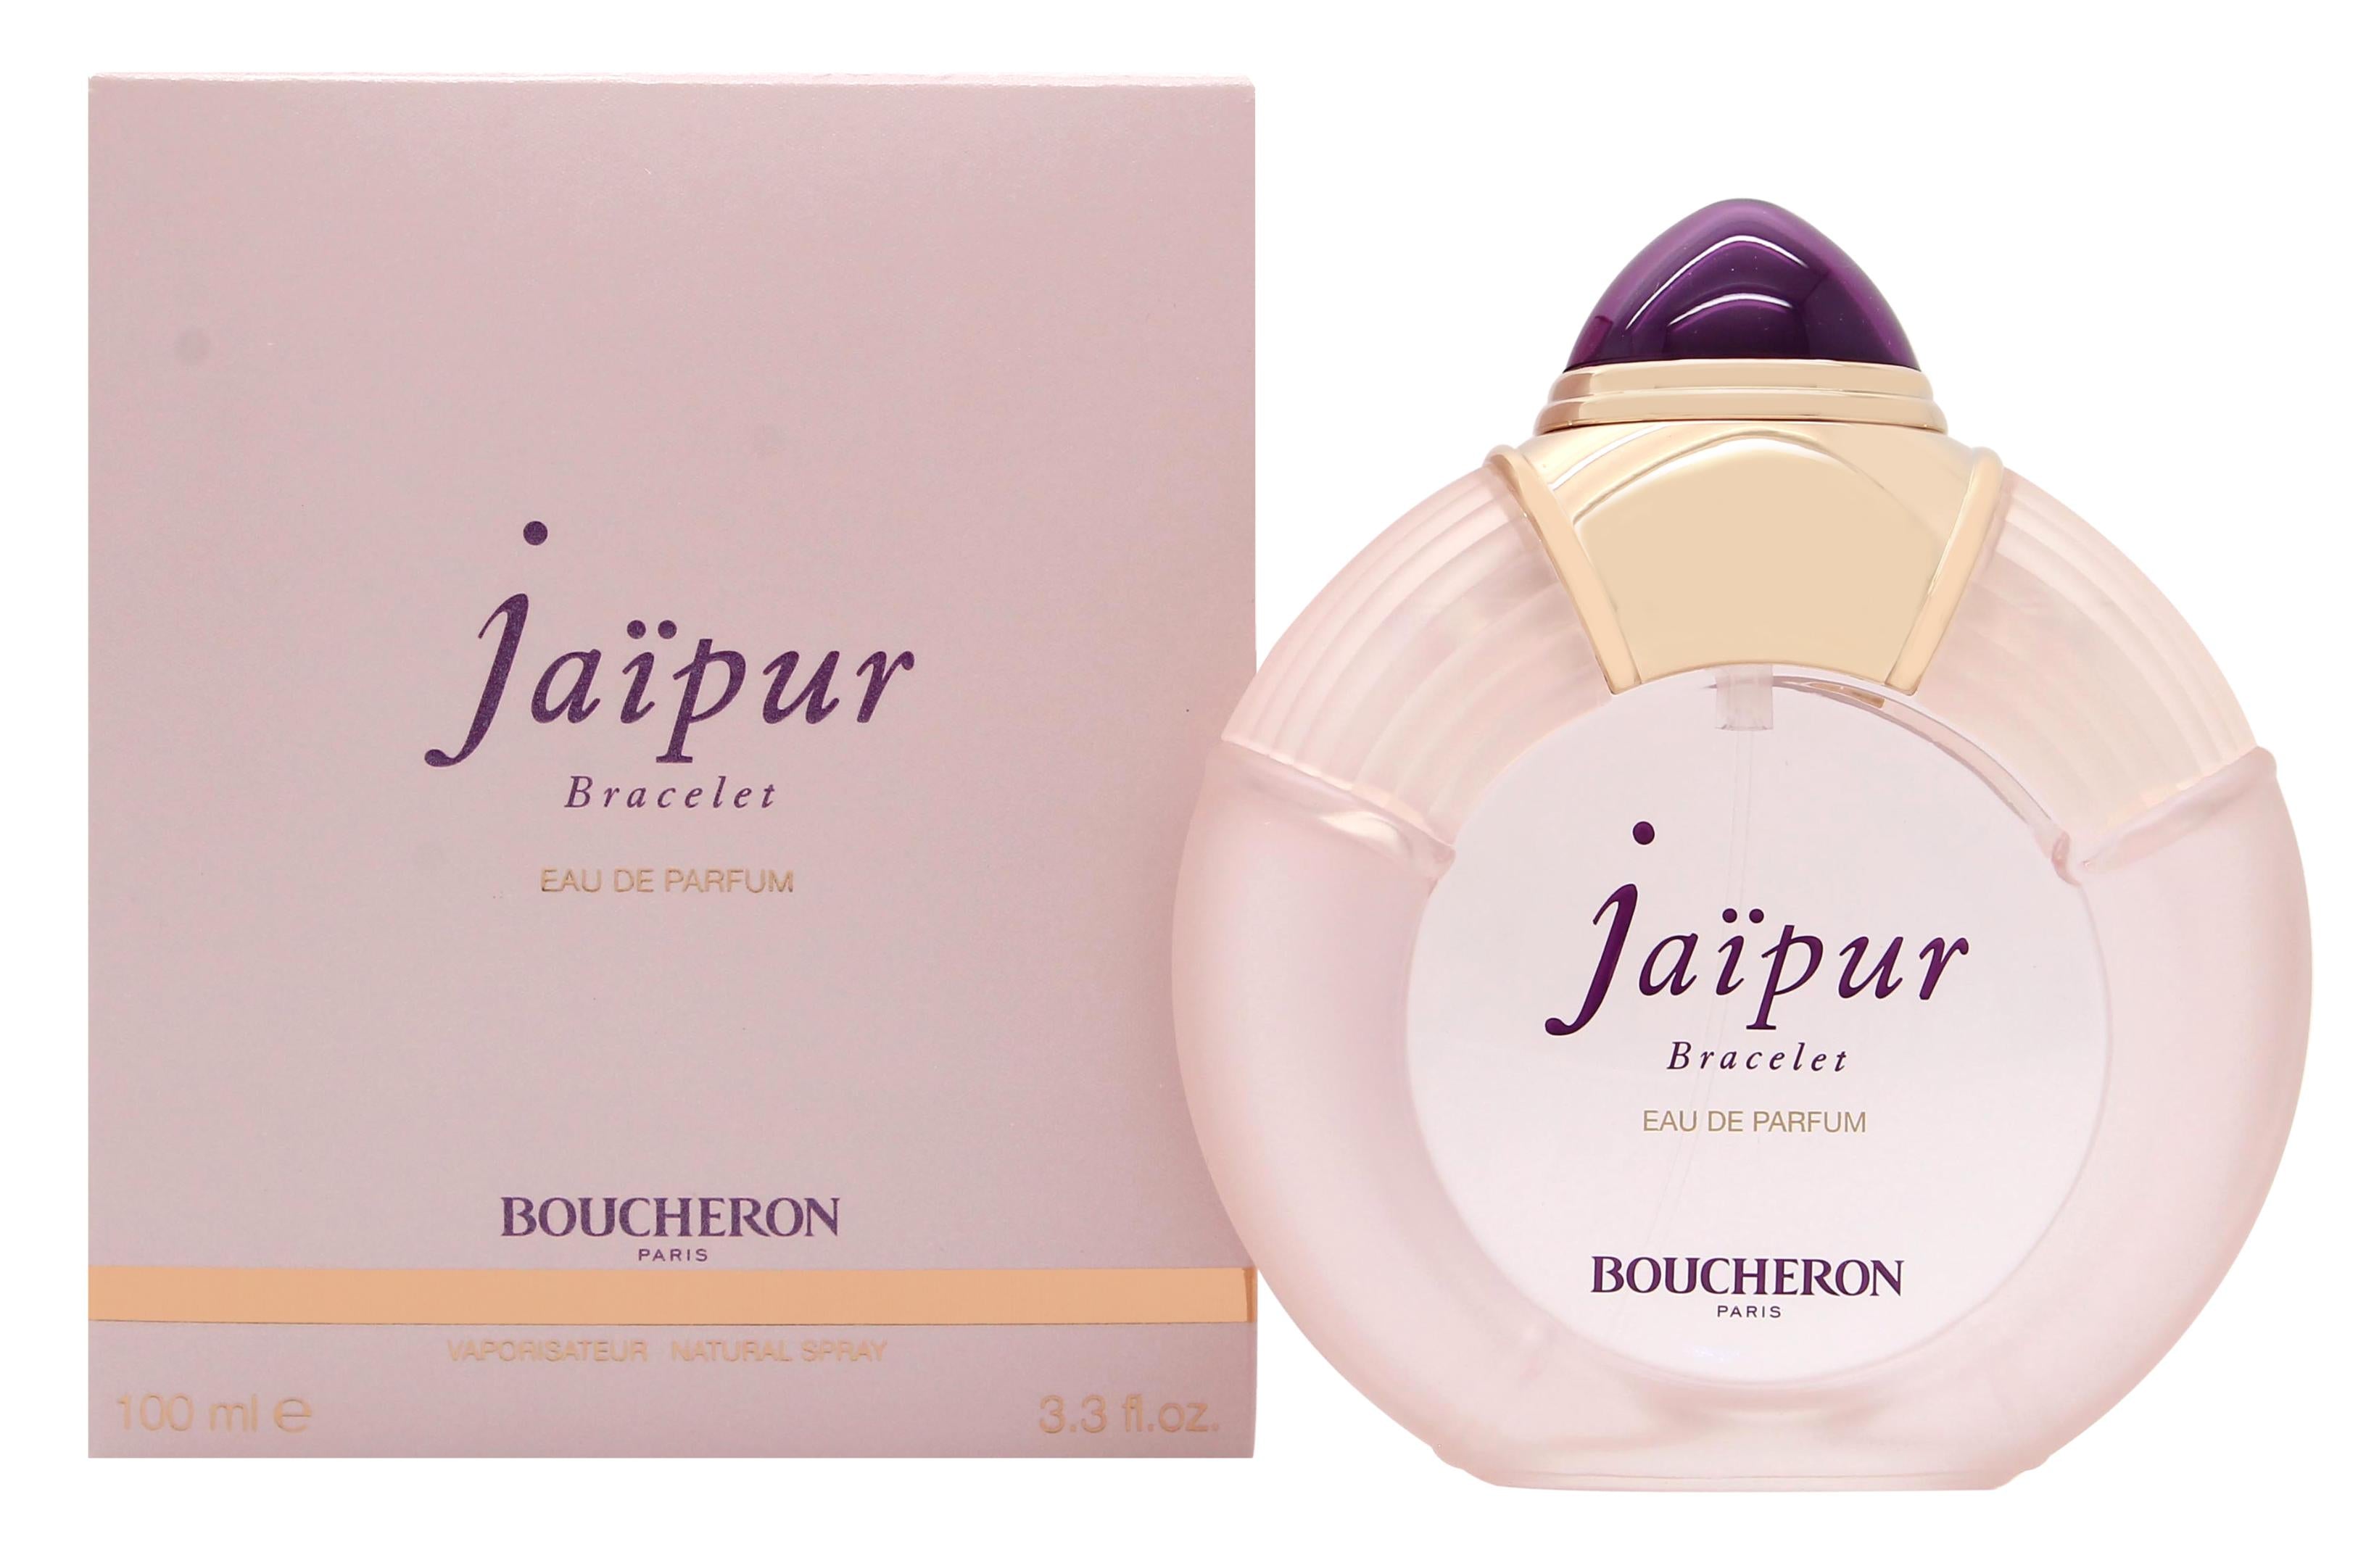 View Boucheron Jaipur Bracelet Eau de Parfum 100ml Spray information